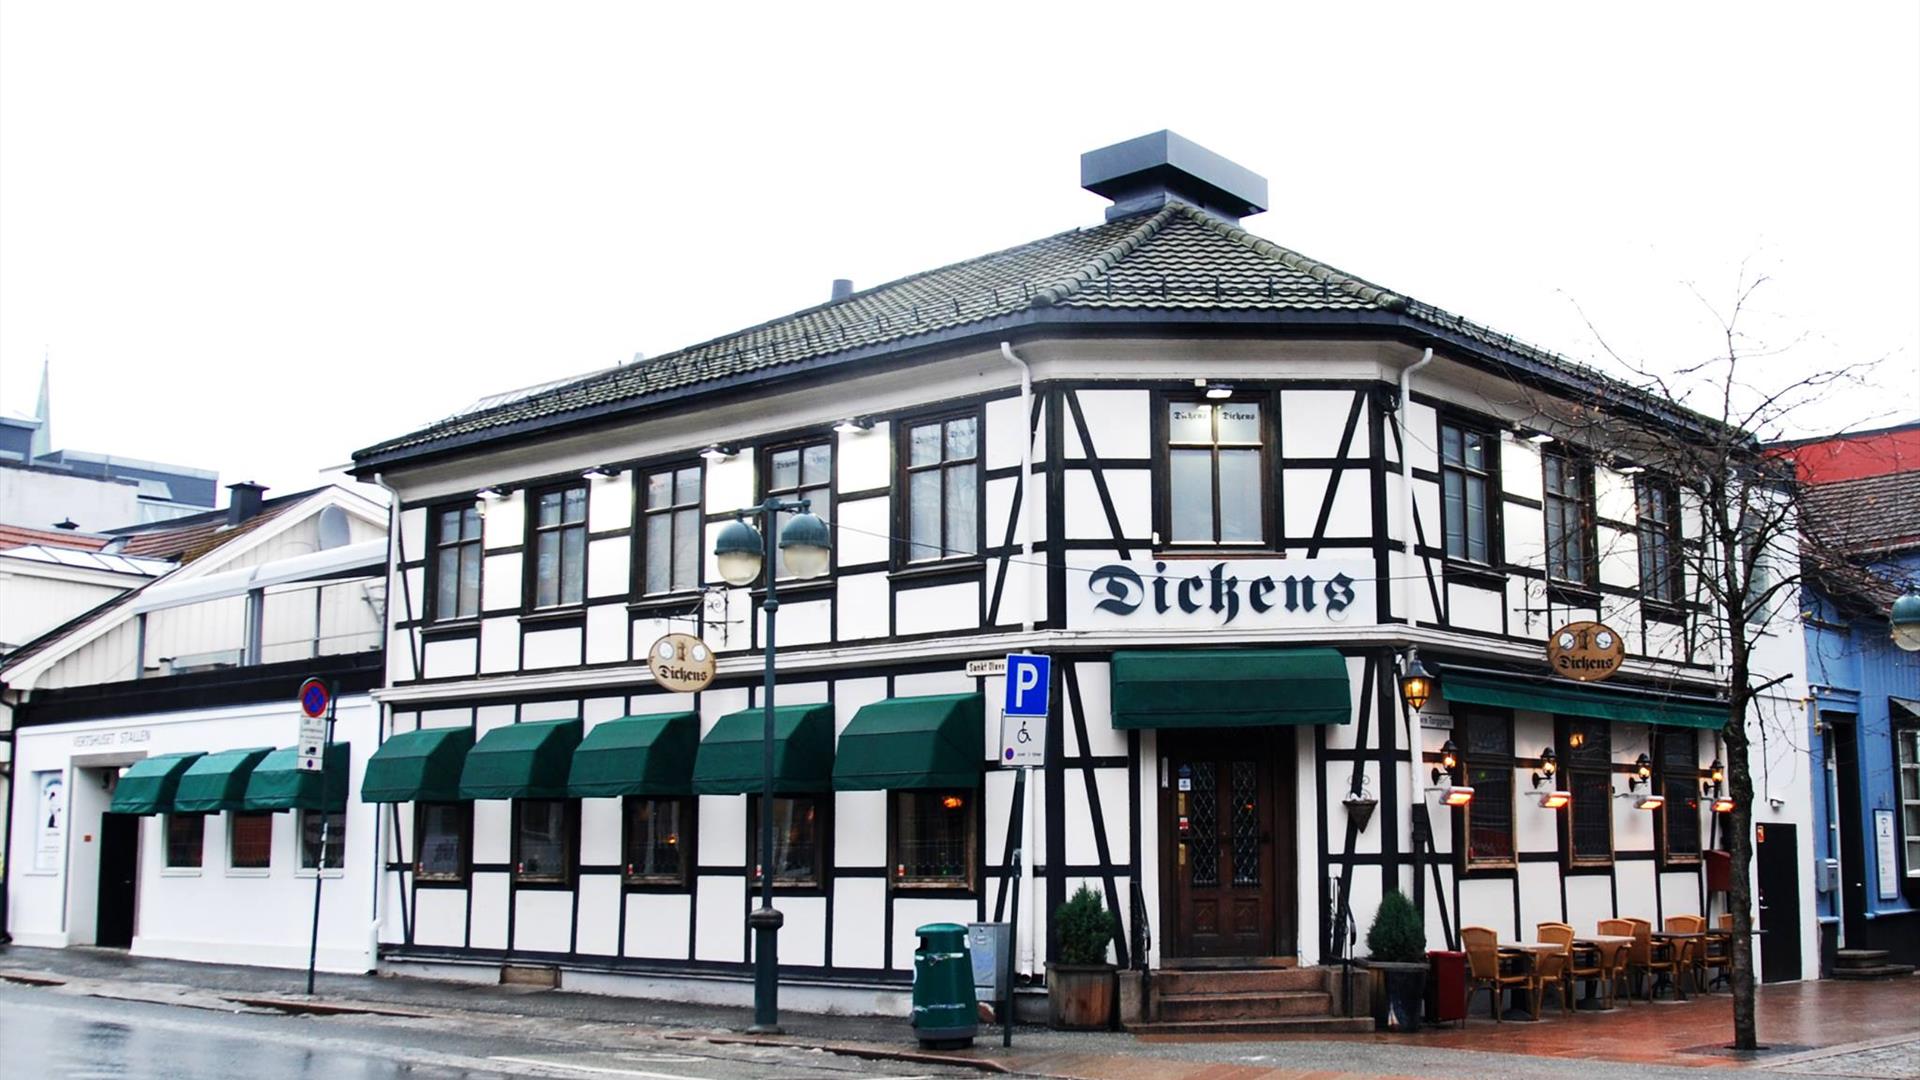 Dickens Pub